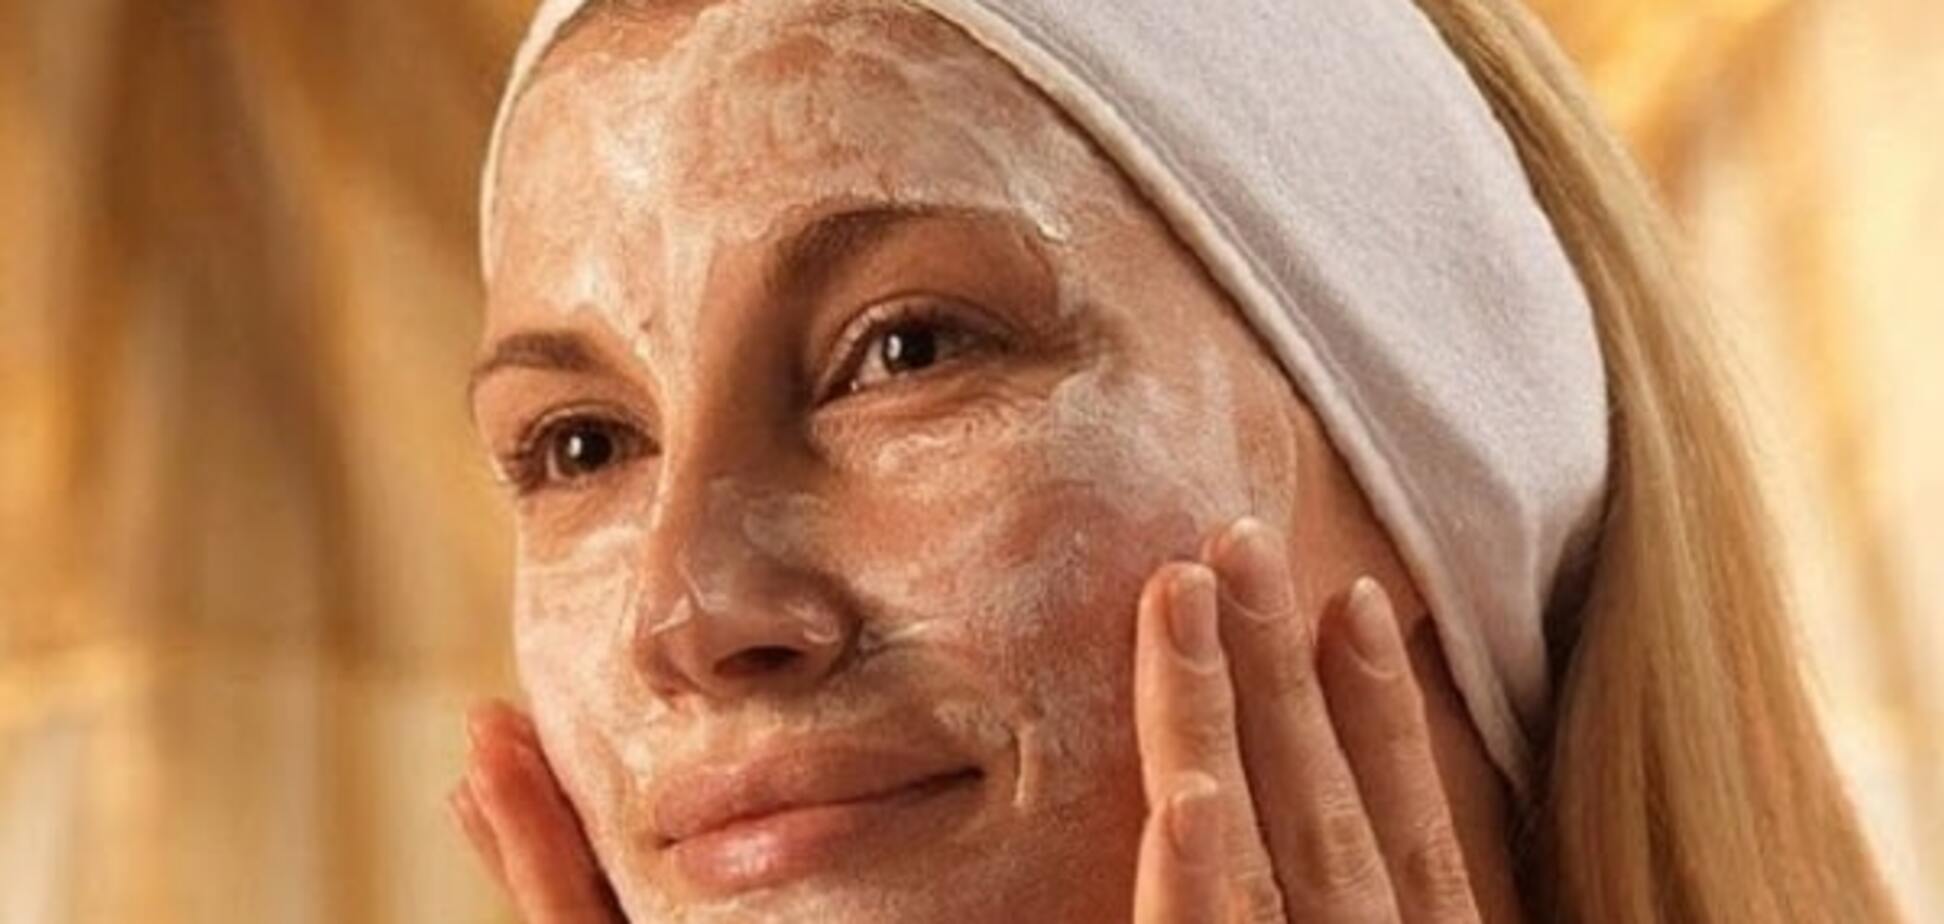 Рисовая маска для лица: омоложение за 15 минут